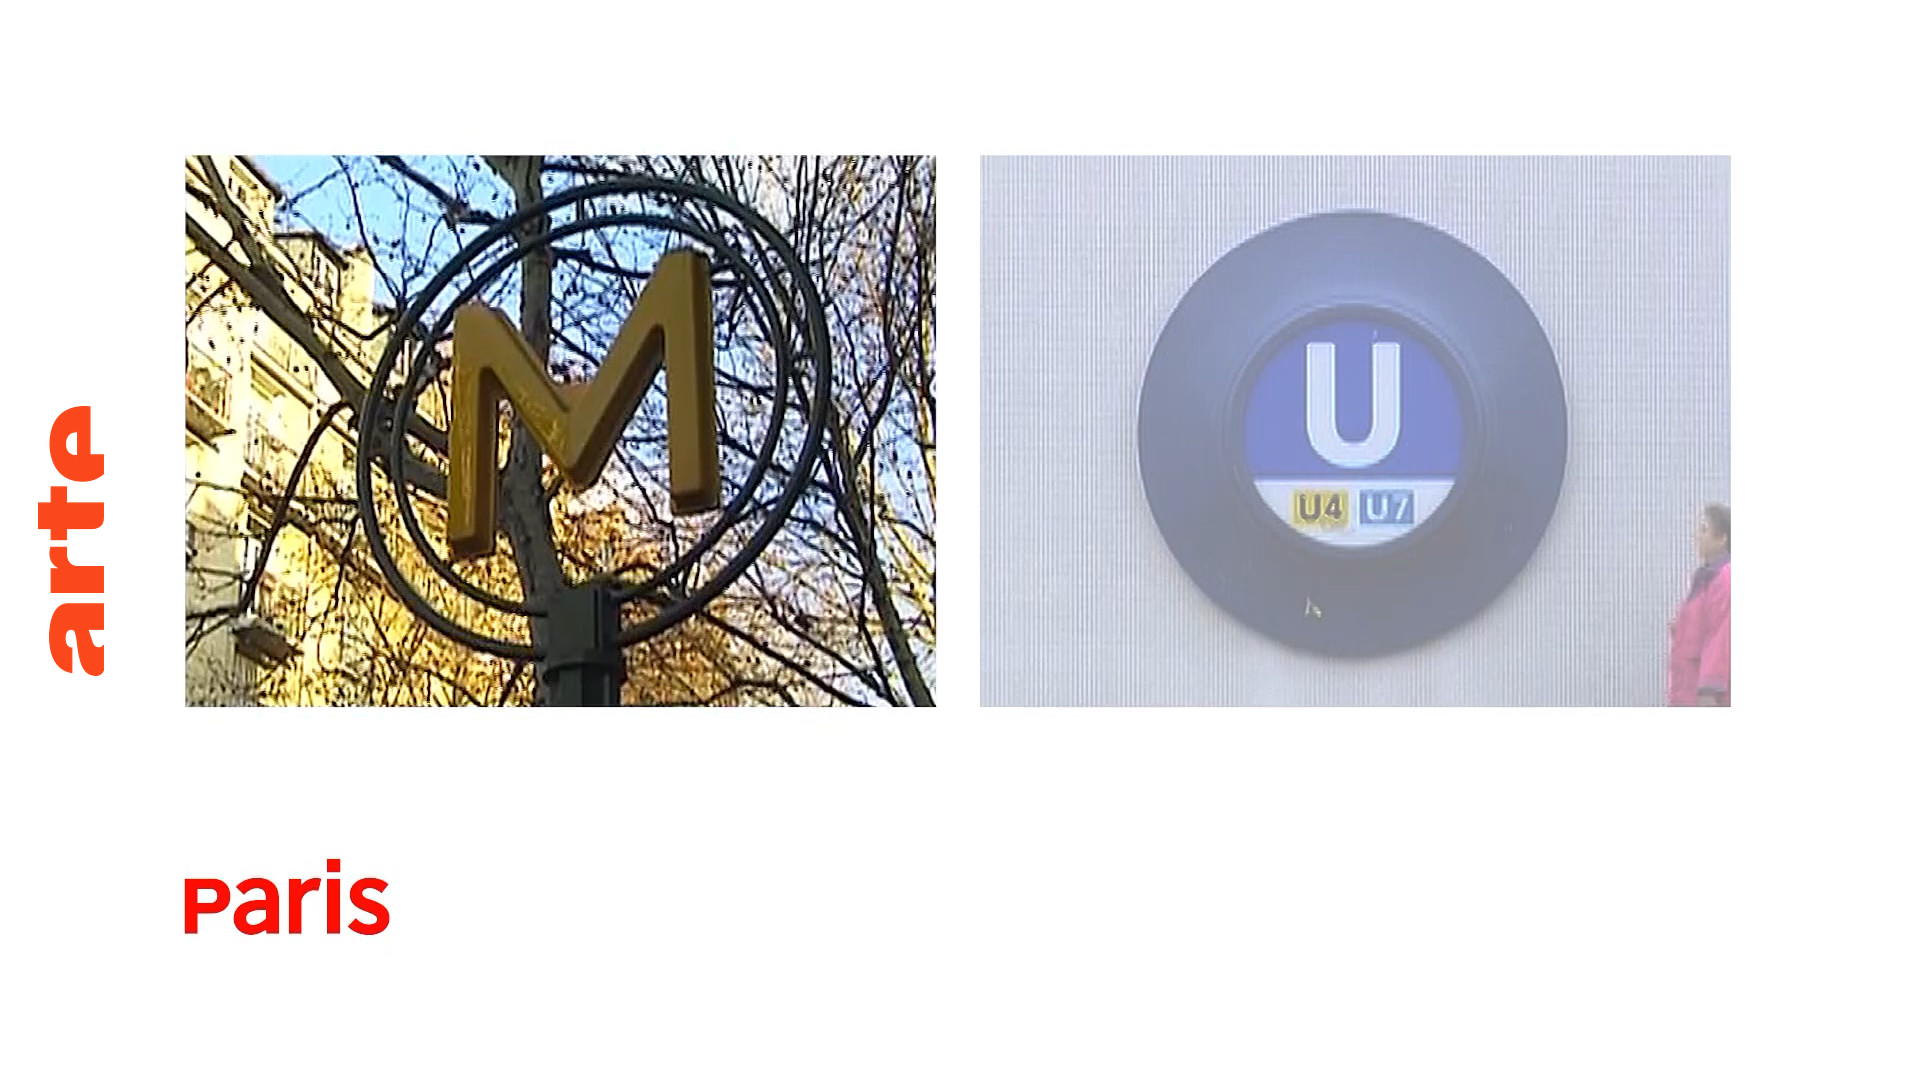 Inventar: die U-Bahn-Schilder